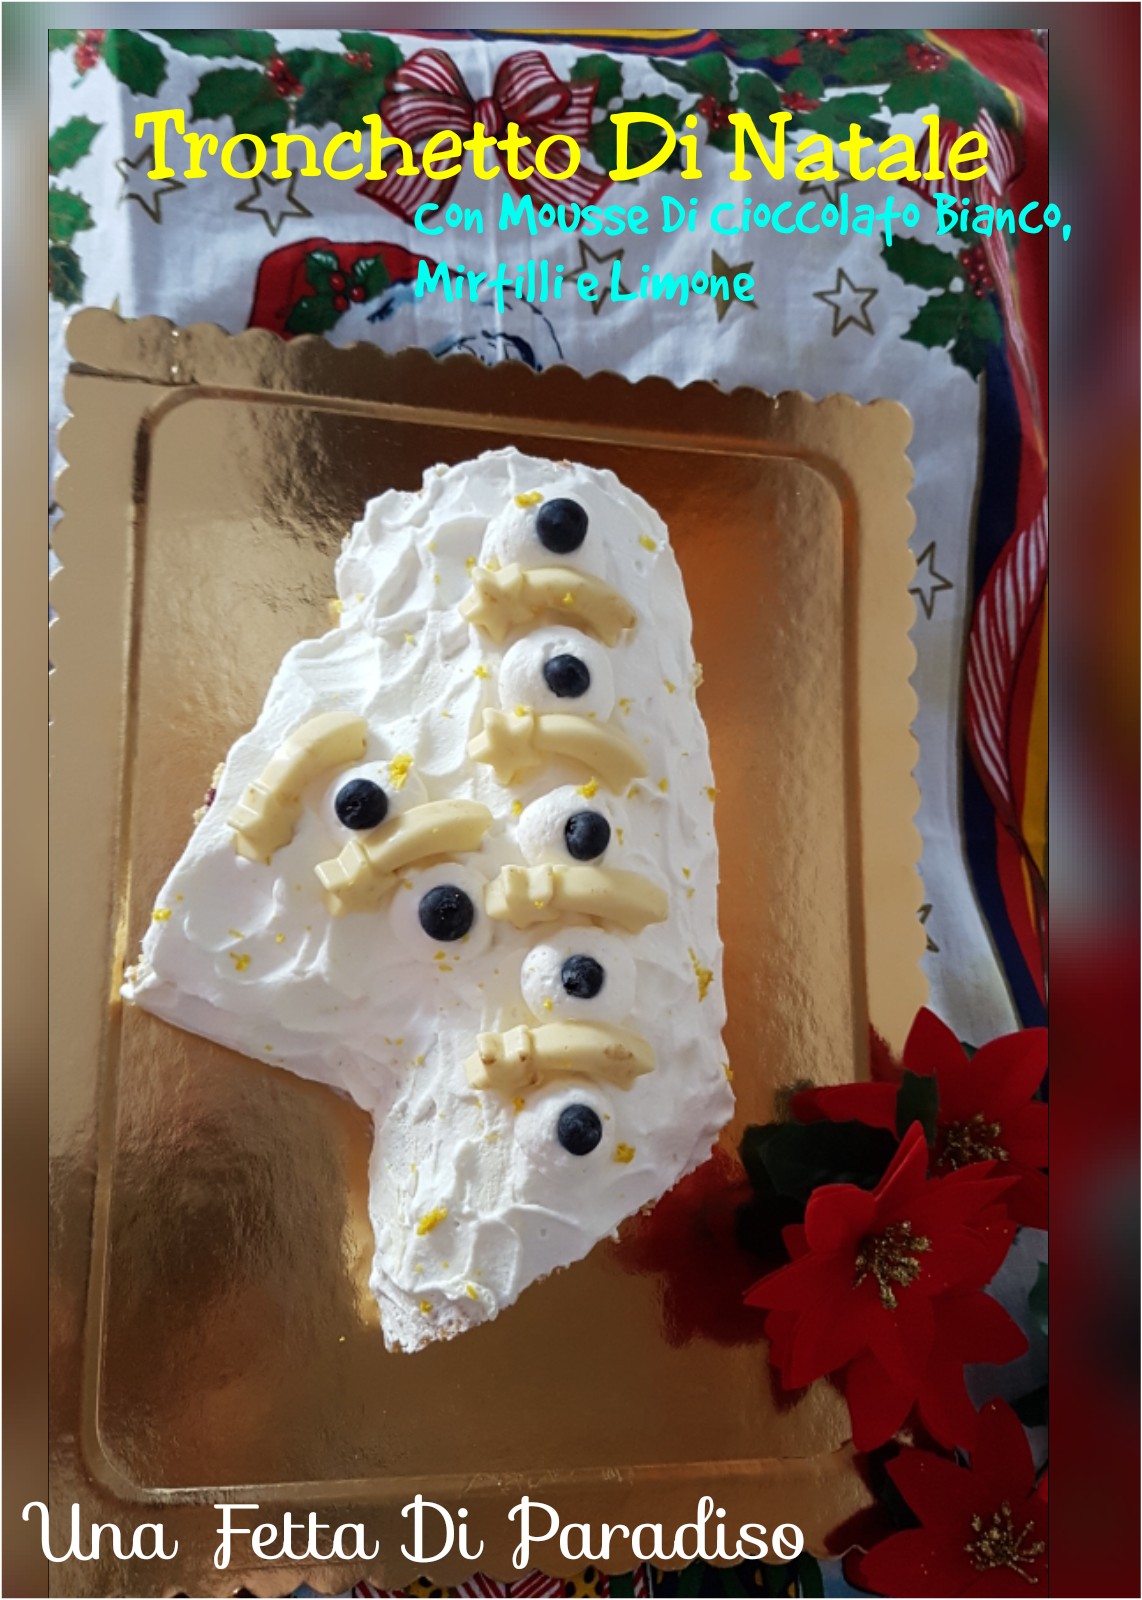 Tronchetto Di Natale Con Cioccolato Bianco.Una Fetta Di Paradiso Tronchetto Di Natale Con Mousse Di Cioccolato Bianco Mirtilli E Limone